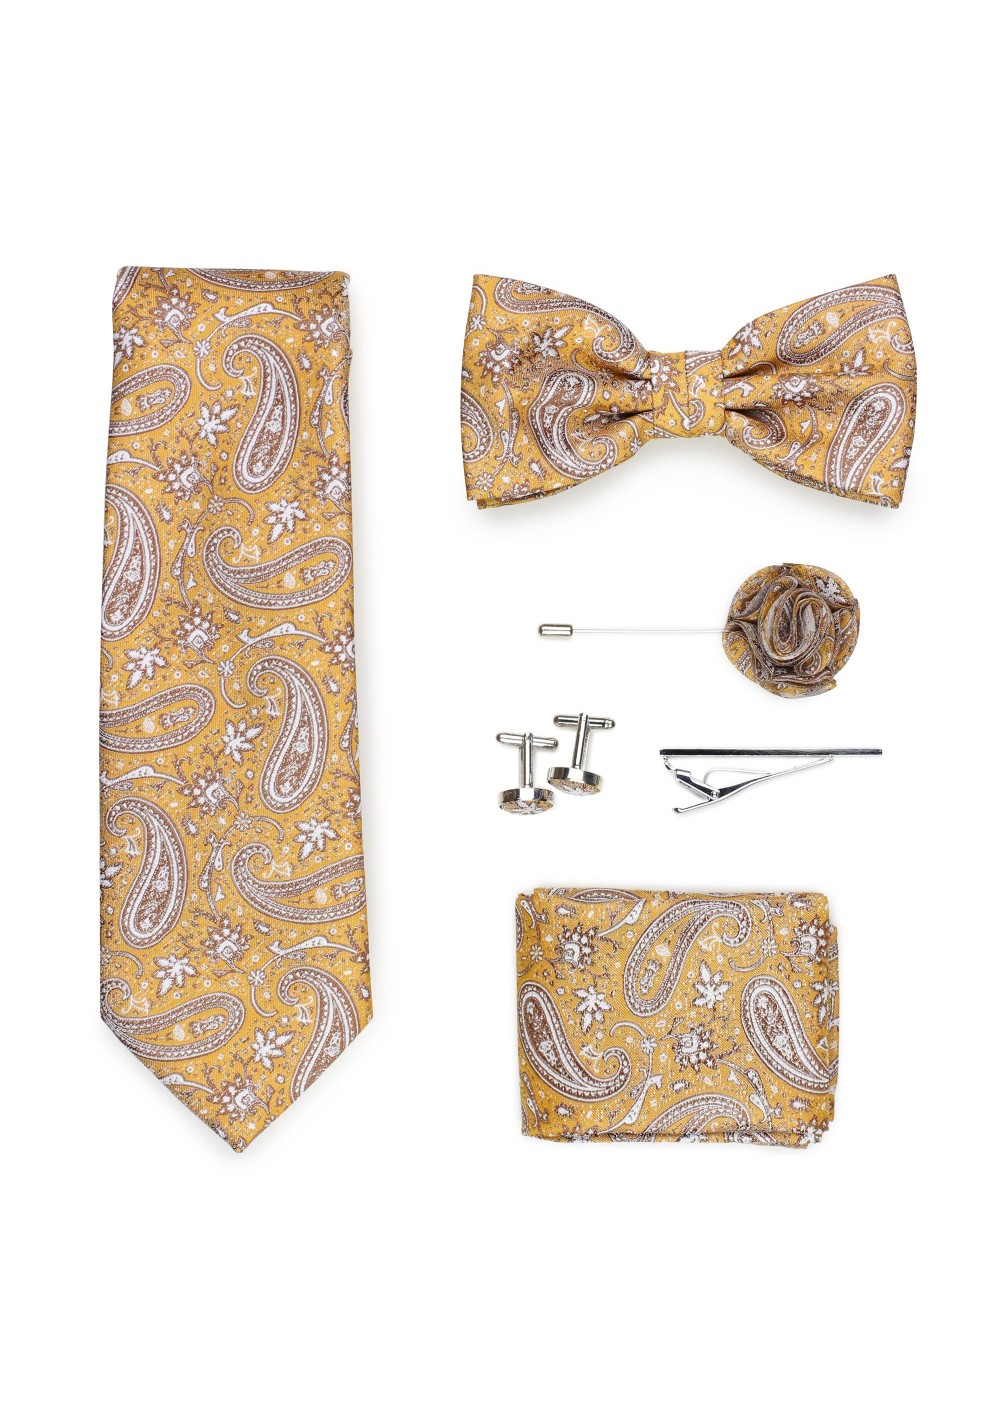 golden paisley necktie gift set